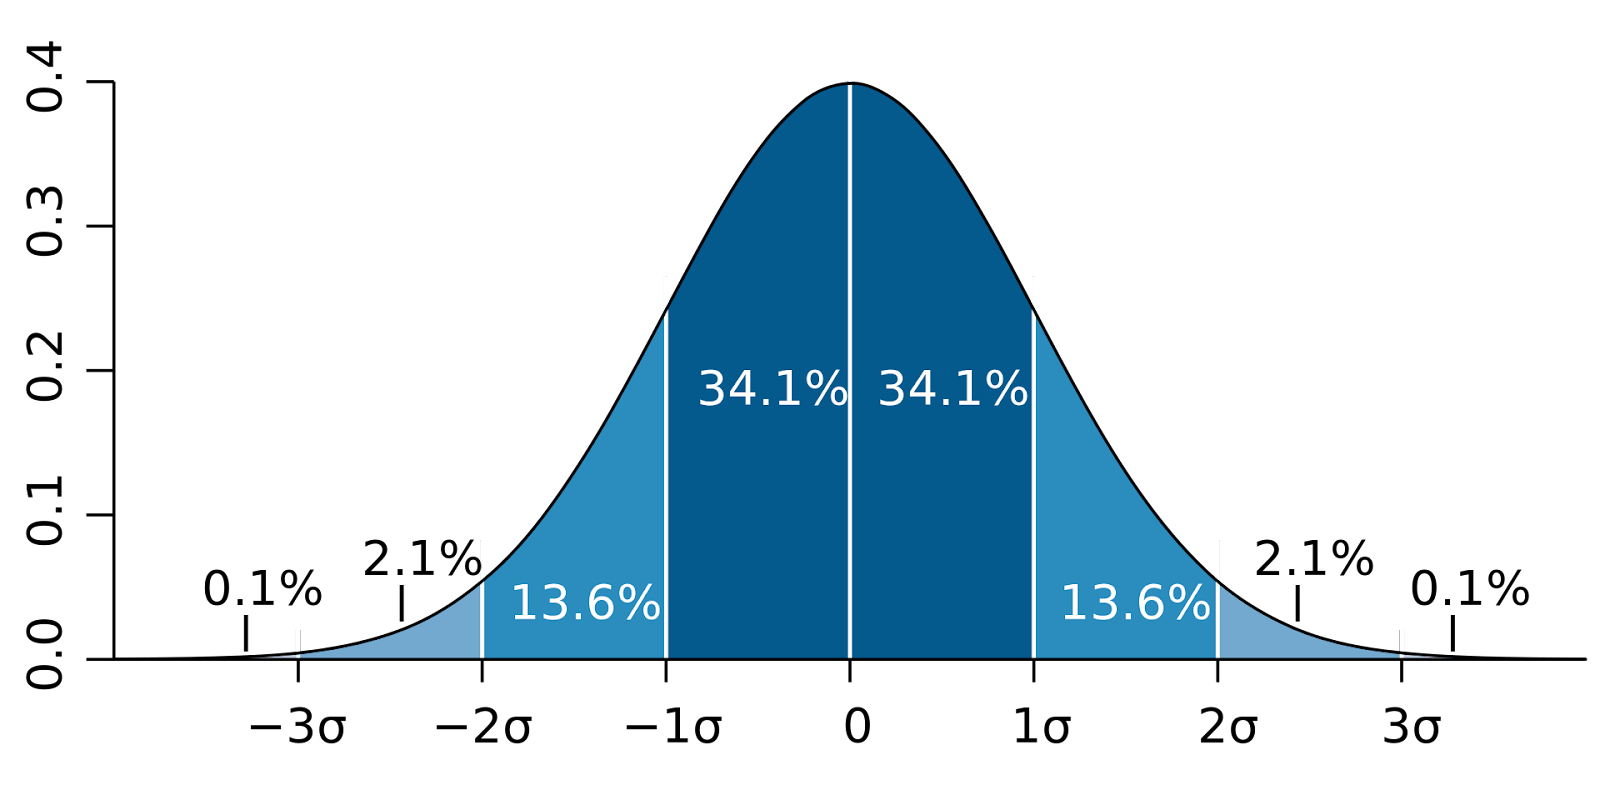 Gráfico da distribuição normal e os limites definidos a partir da soma e subtração de desvios padrões (σ) a partir da média. A imagem contém os intervalos definidos por até três desvios padrões.